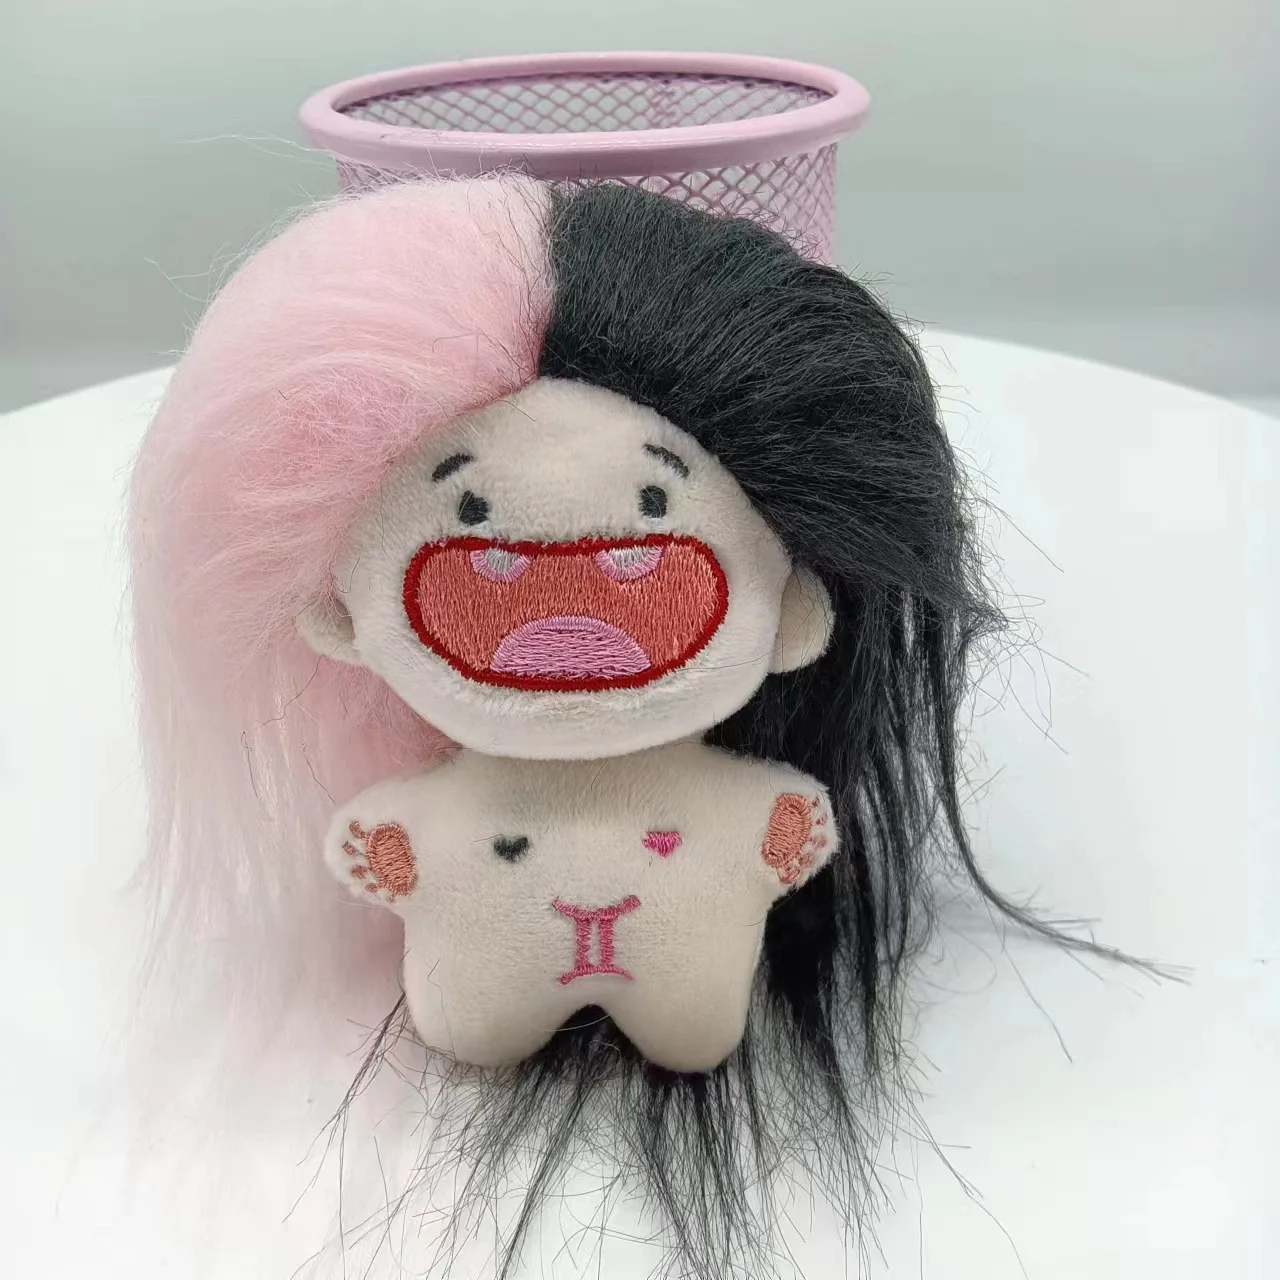 K na música baixo mio figura de ação anime kawaii bonito menina figura 10cm  filme collectible modelo brinquedos boneca presentes - AliExpress